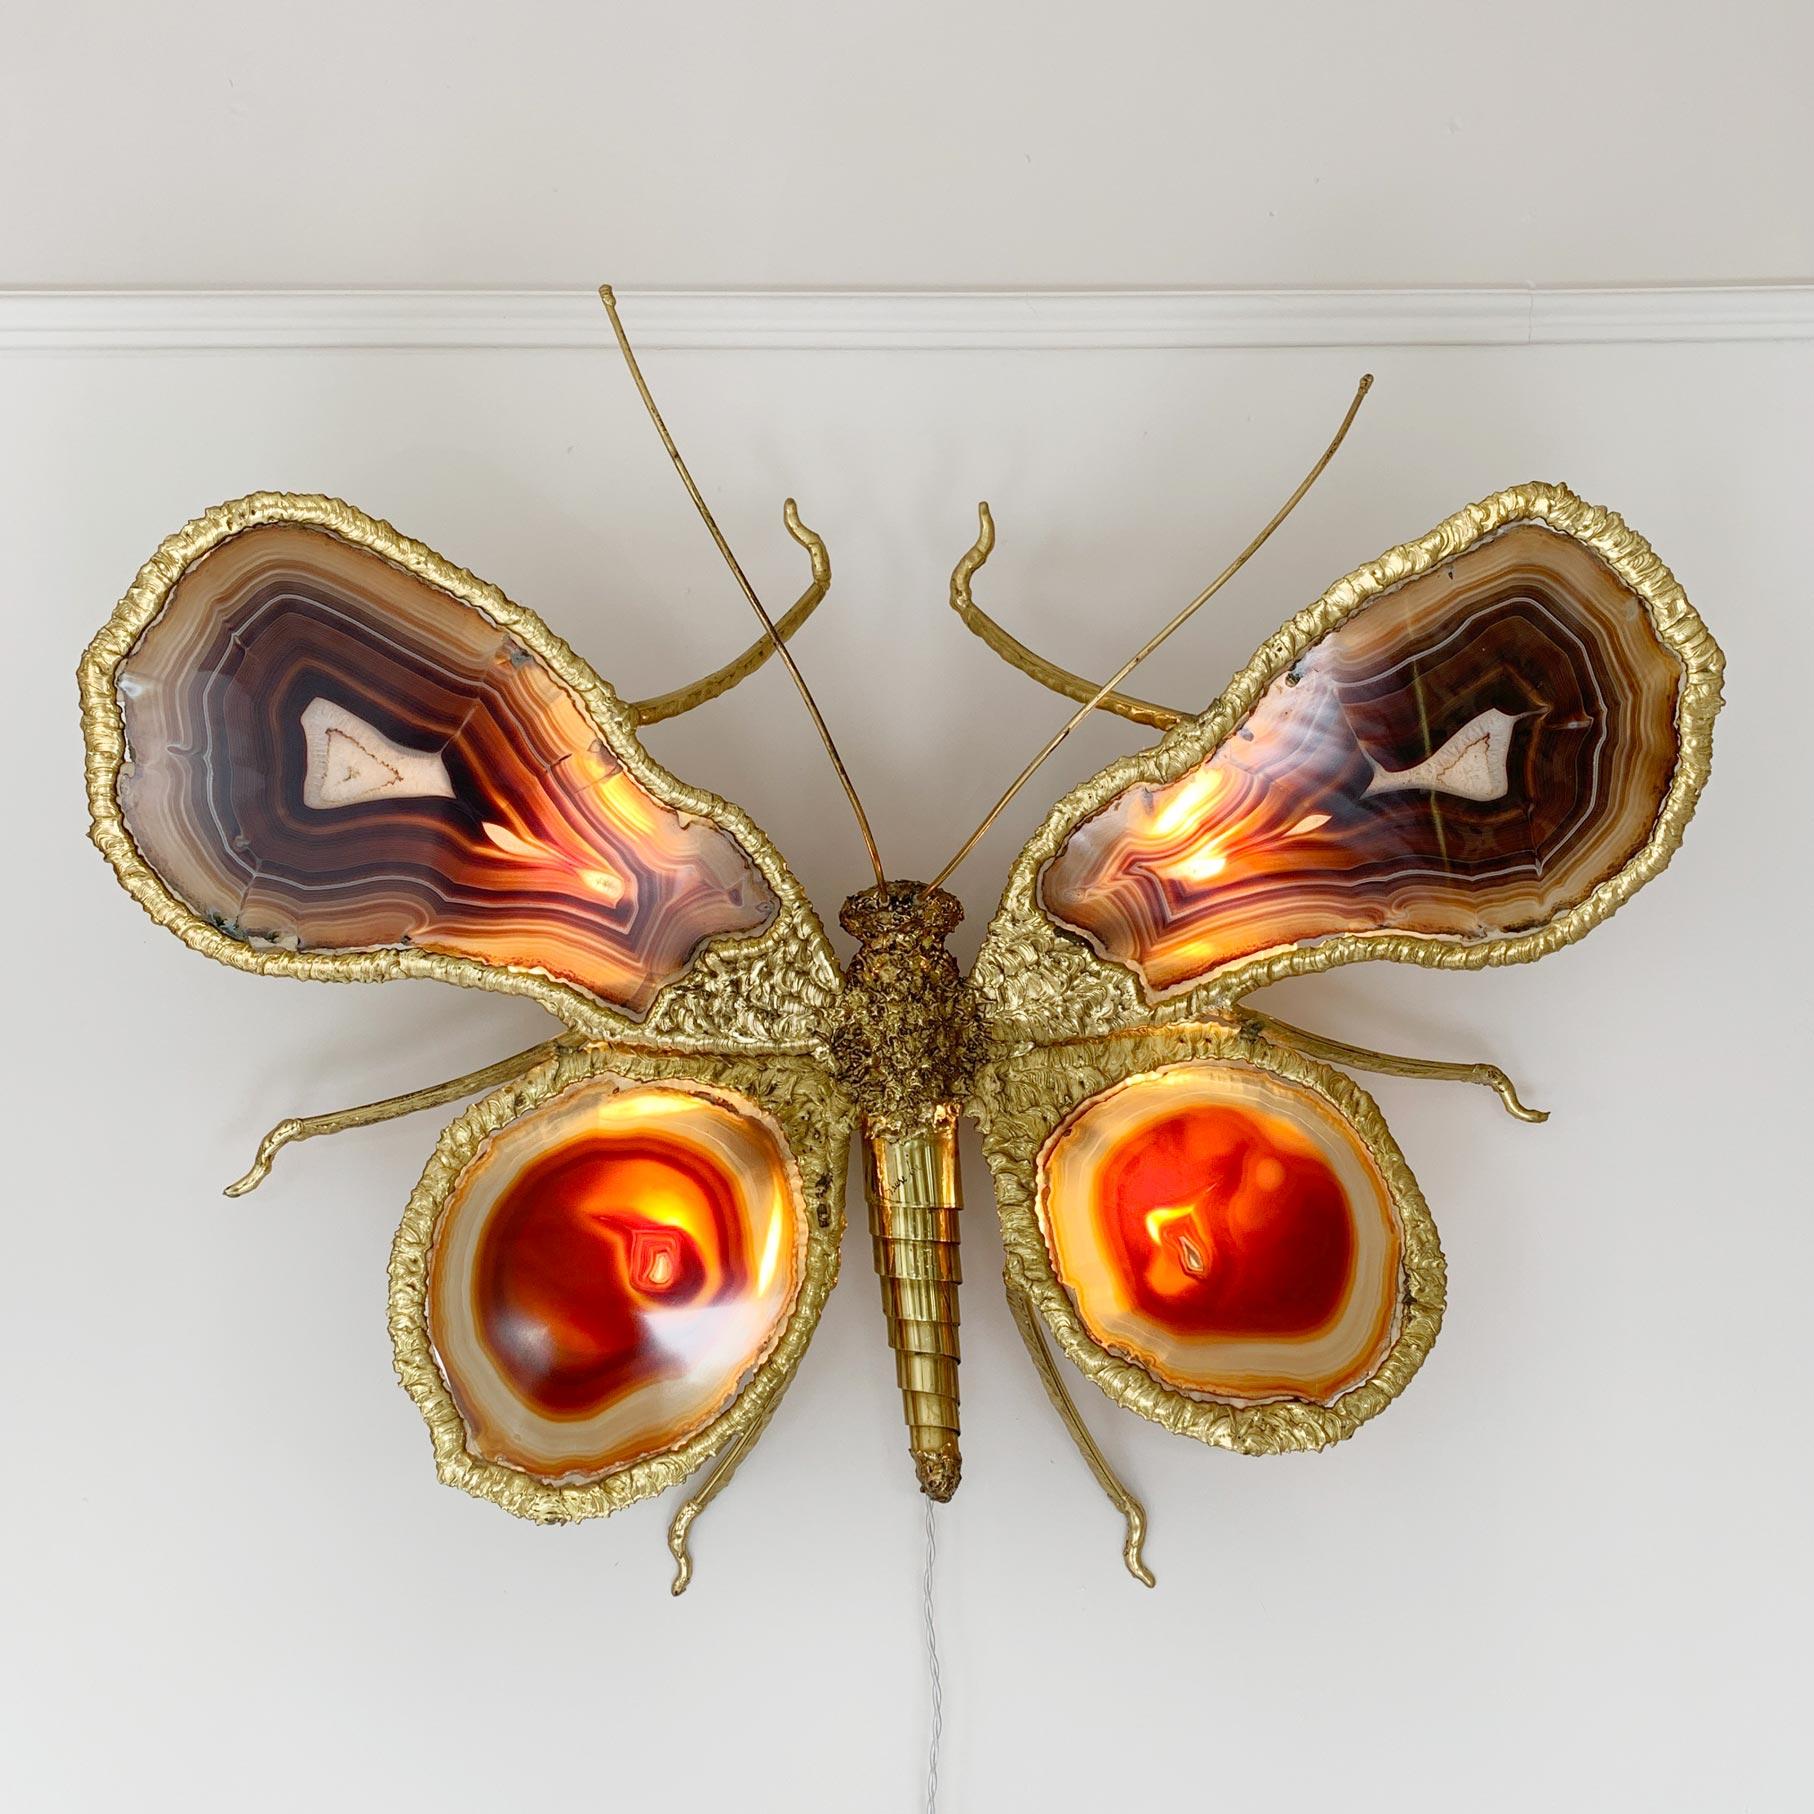 Une sculpture incroyablement rare de la sculptrice de renommée mondiale Isabelle Faure, en laiton et agate travaillés à la main. L'énorme papillon mesure plus de 80 cm de diamètre et les superbes ailes en agate sont toutes éclairées par le dessous à